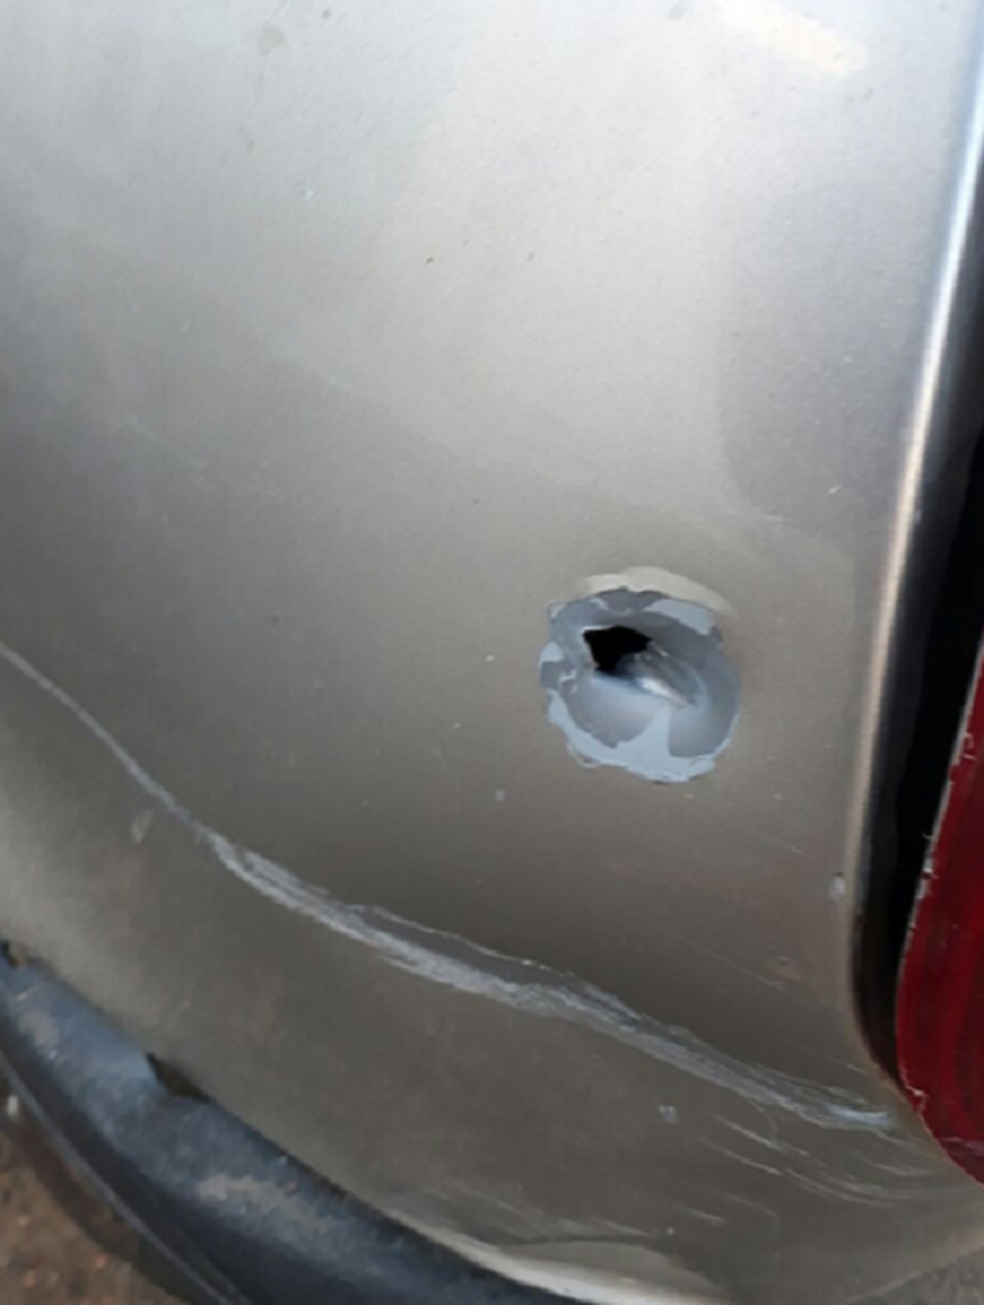 Um veículo que estava próximo ao banco foi atingido por um tiro. Ninguém foi preso. Moradores estão com medo da insegurança em Ipaumirim. (Foto: Ipaumirim.com)